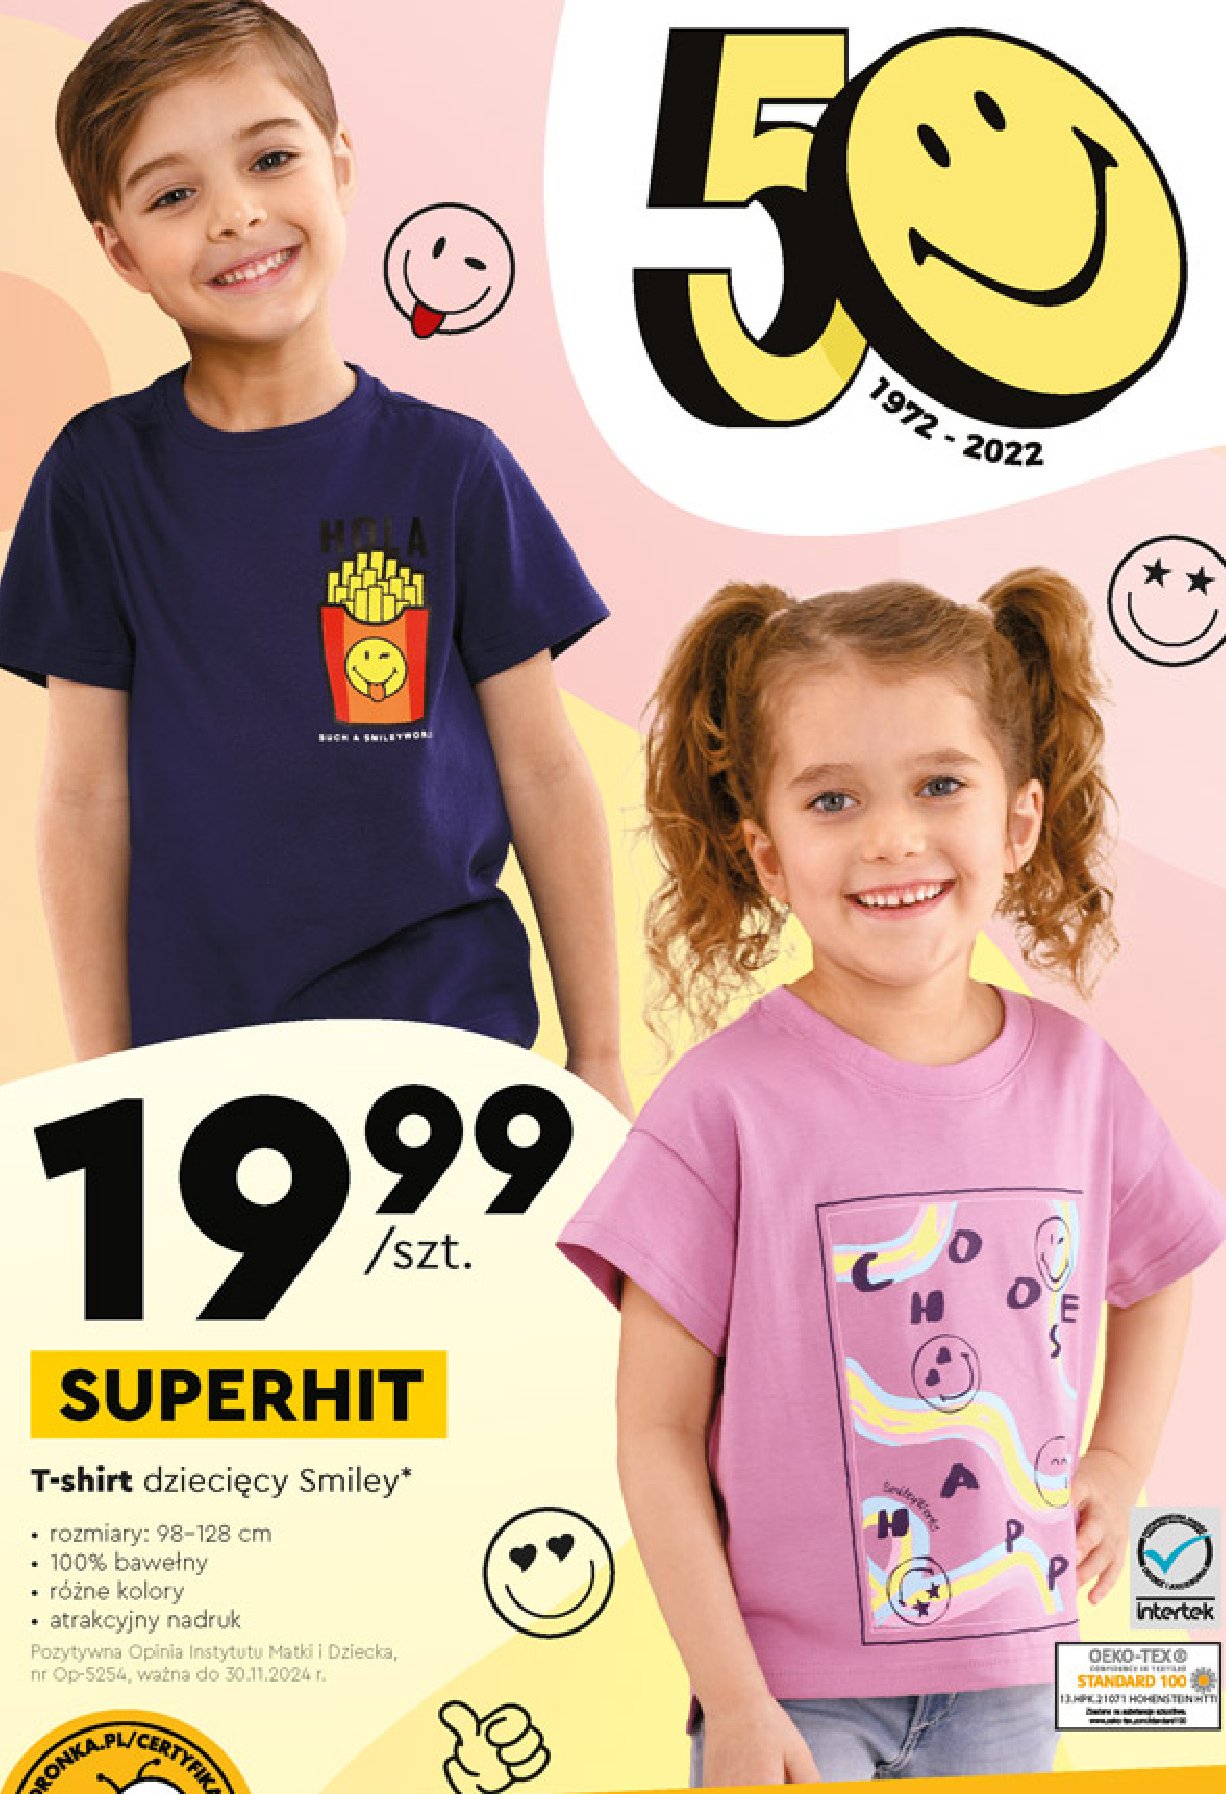 T-shirt dziecięcy smiley 134-164 promocja